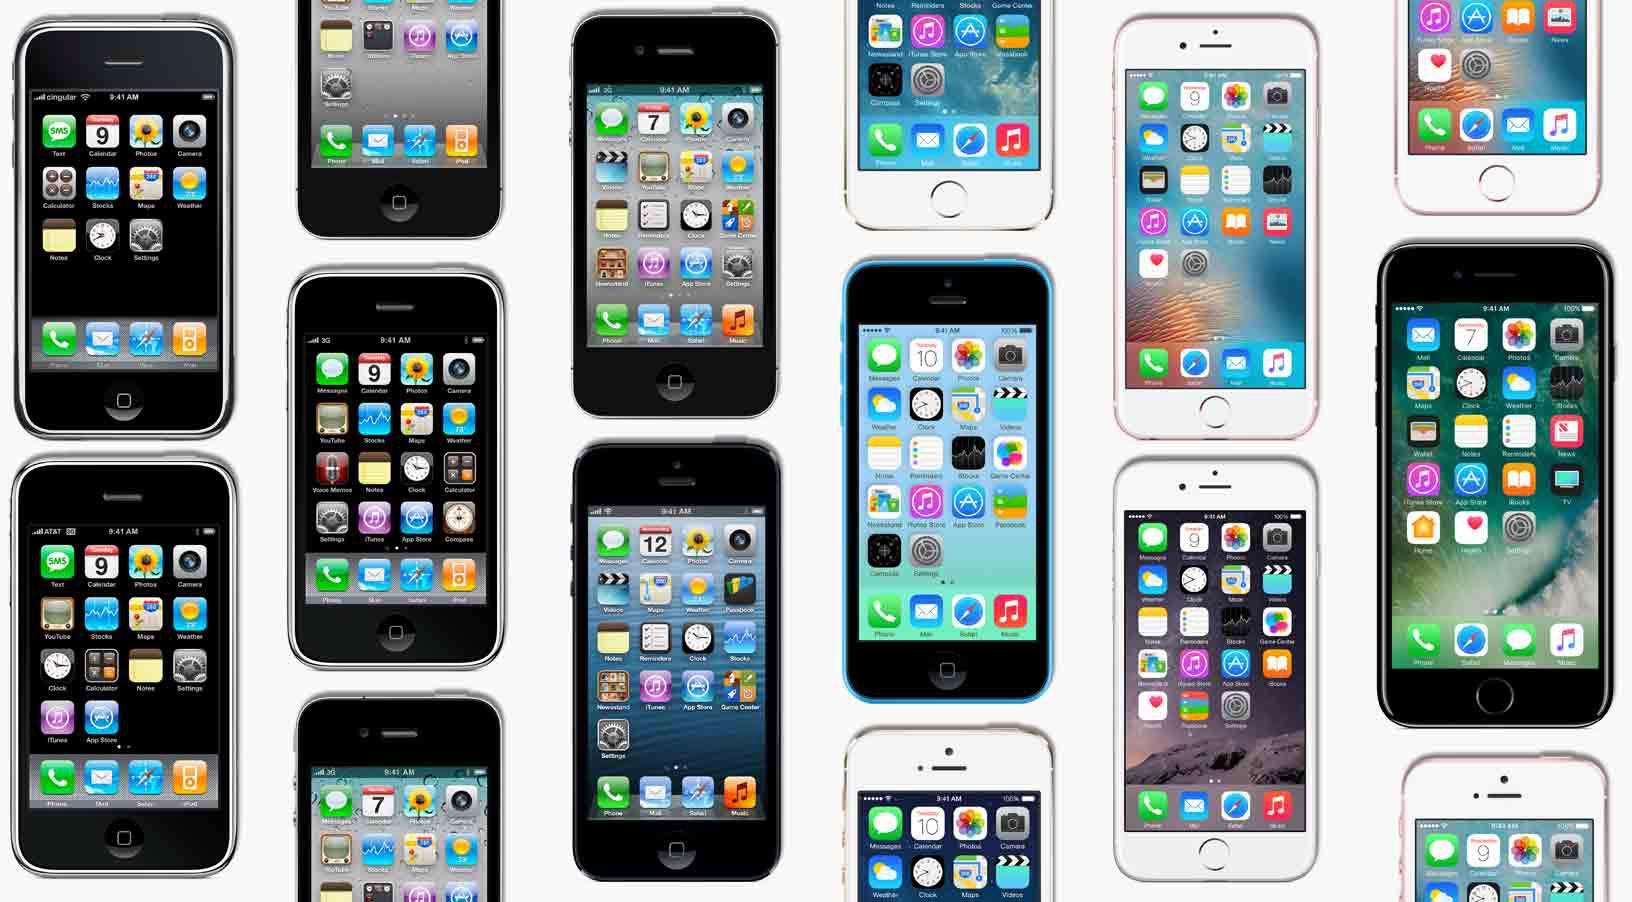  Apple telah merilis 11 model iPhone selama bertahun-tahun